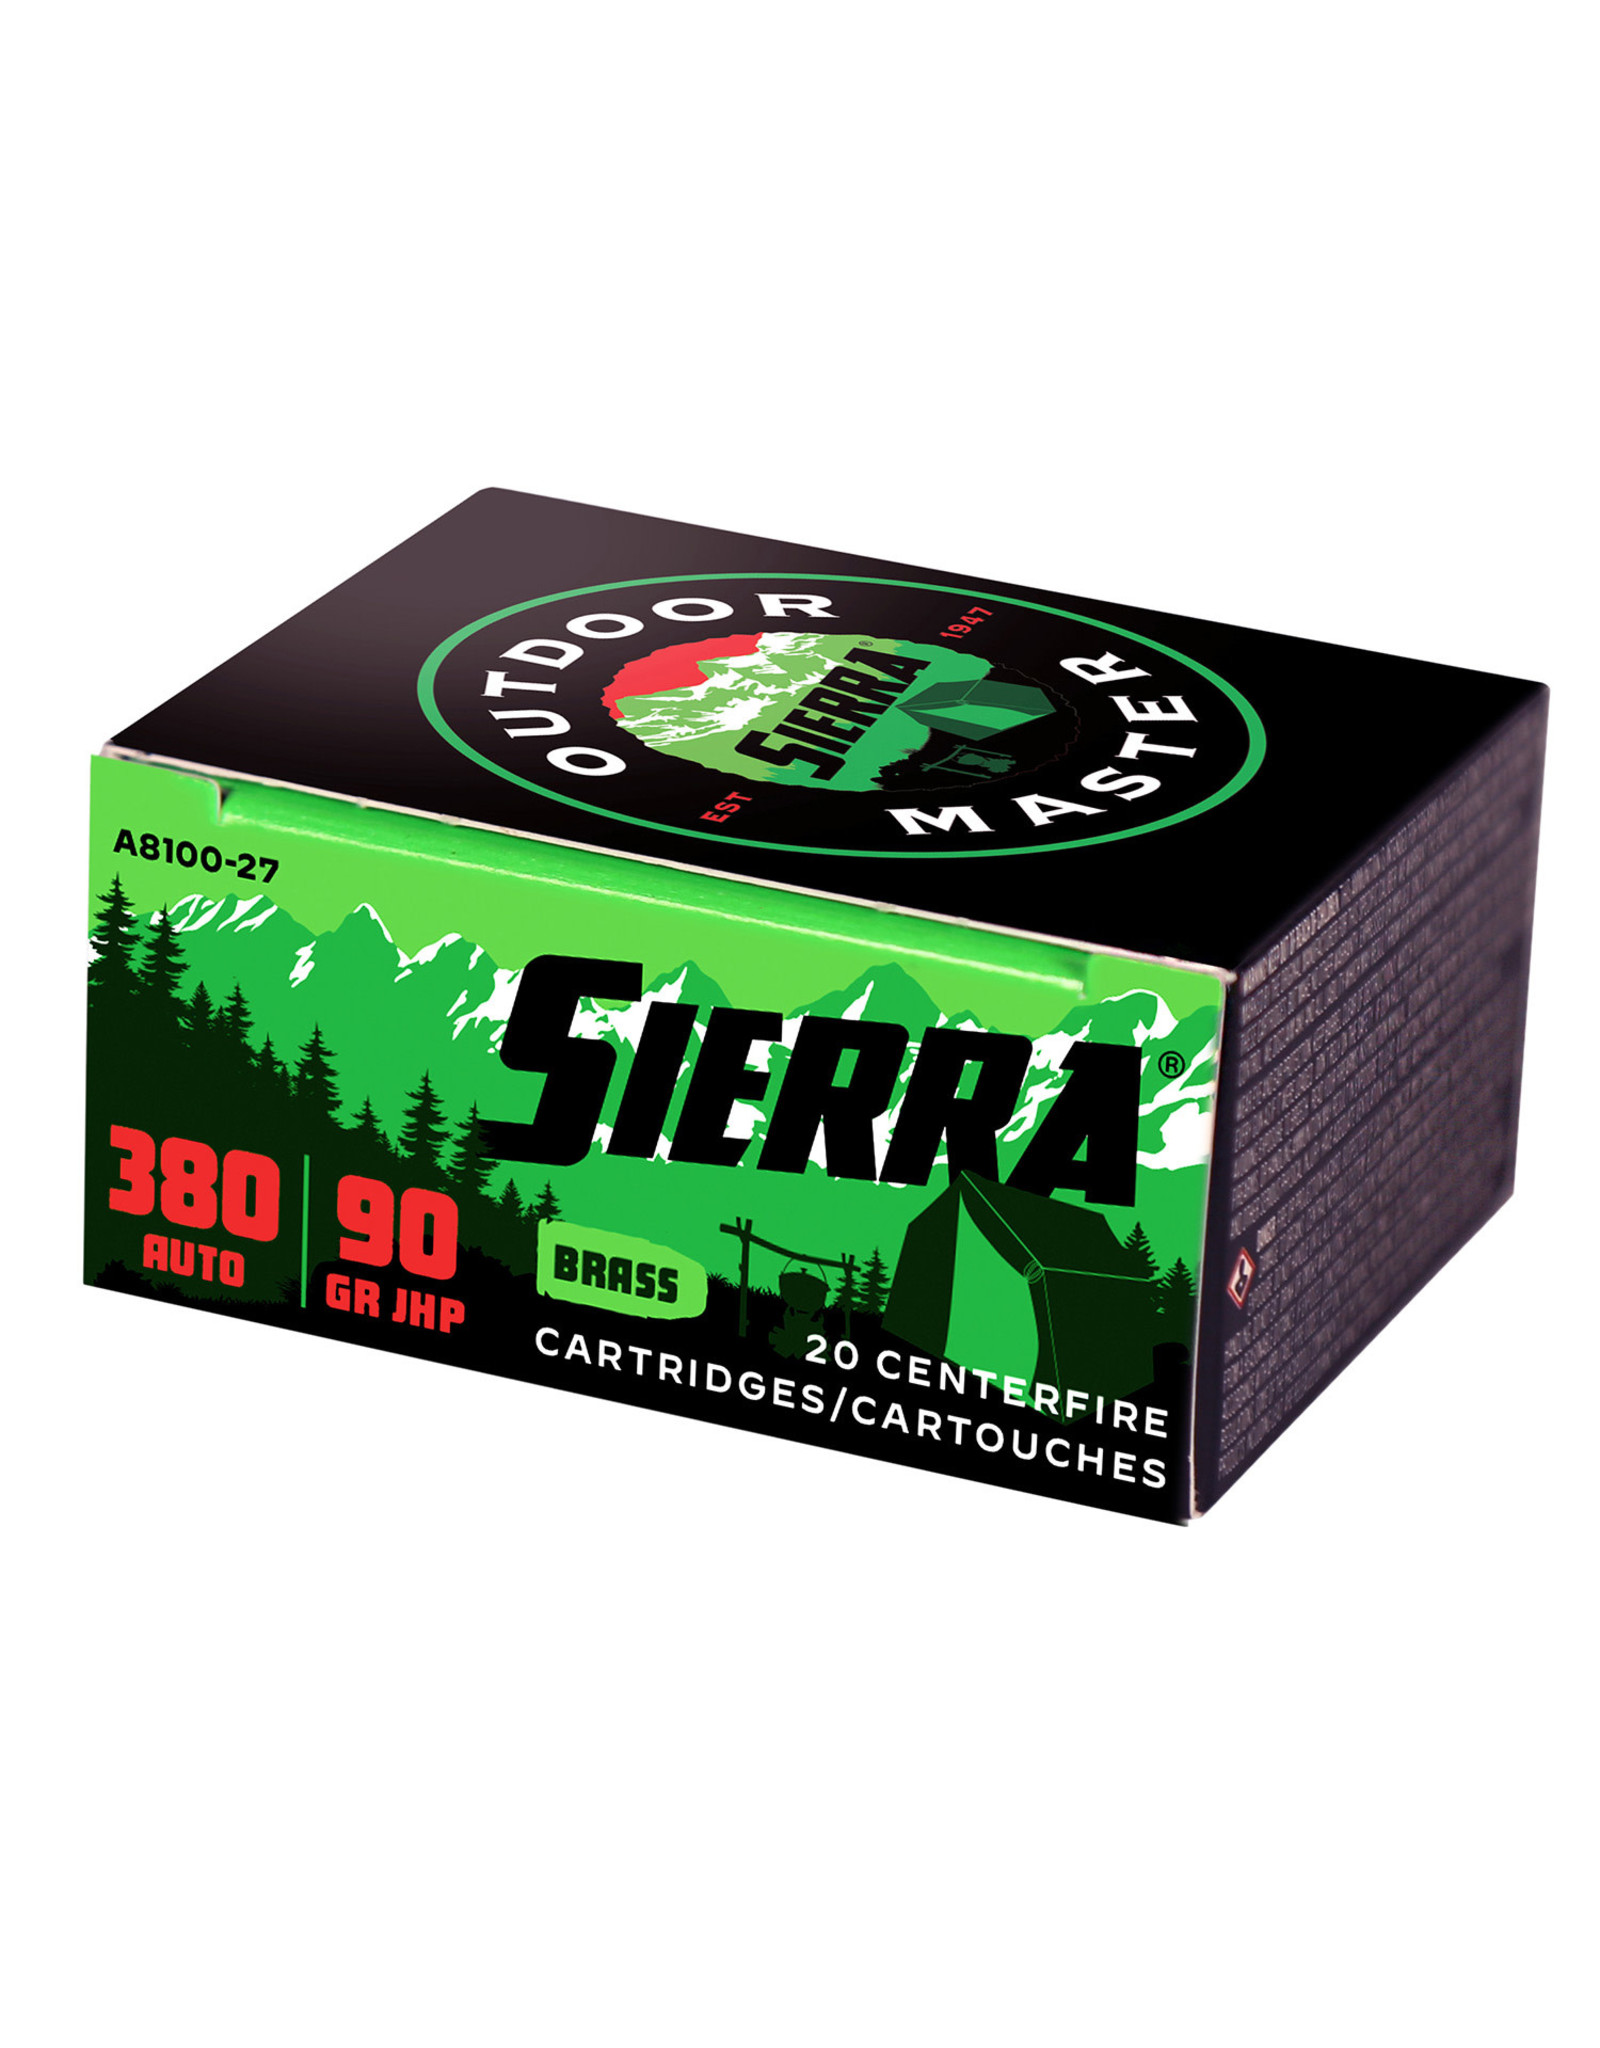 Sierra .380 ACP 90 Gr JHP - 20 Count